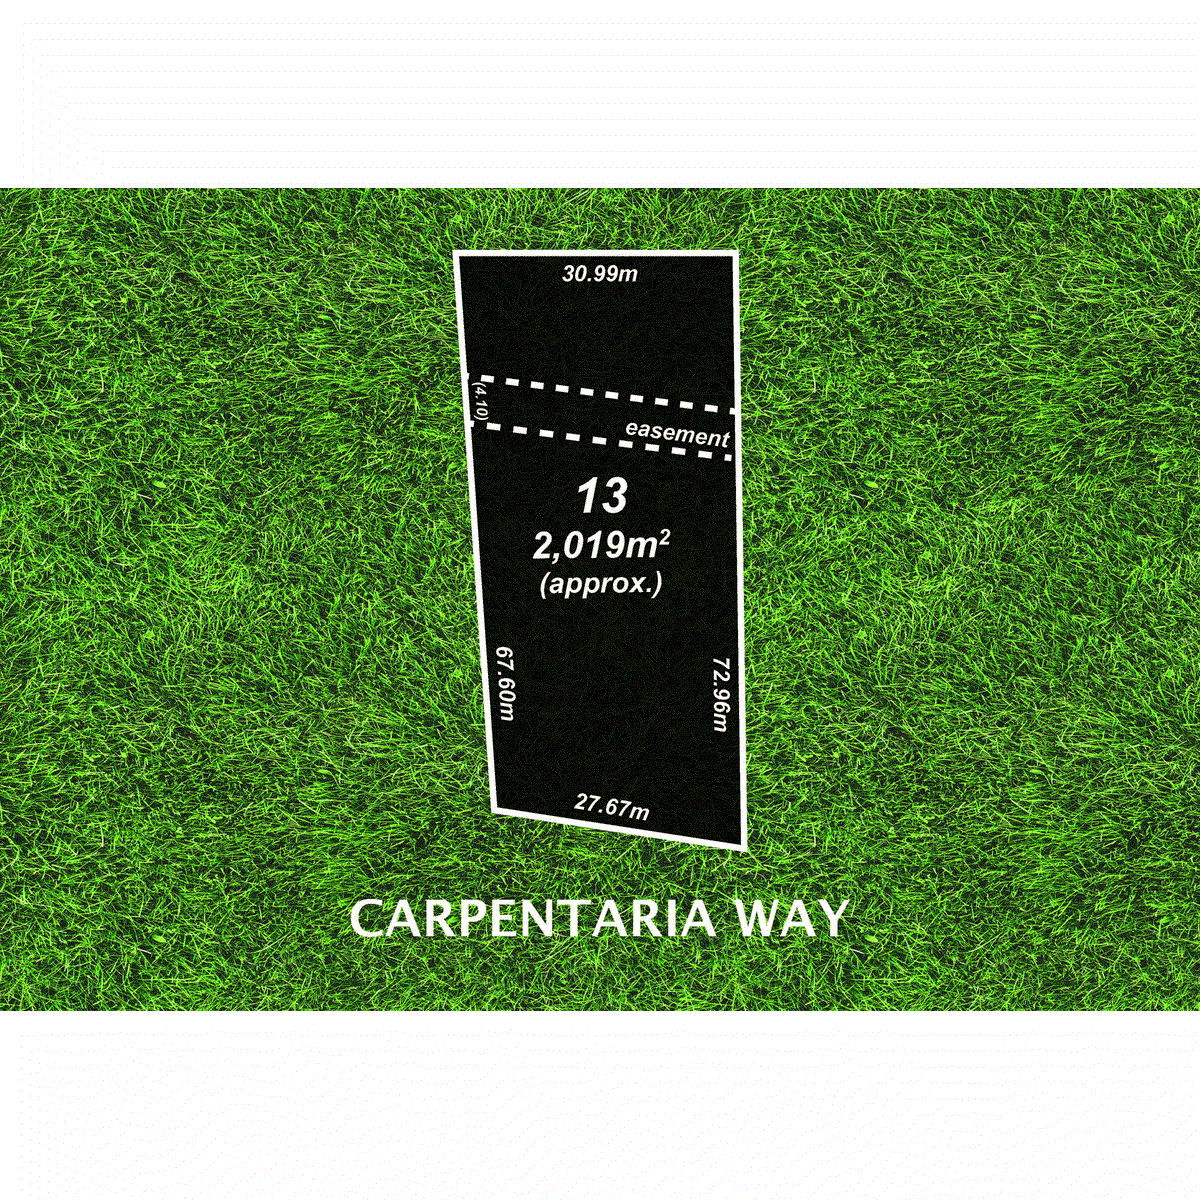 13 Carpentaria Way, HEWETT, SA 5118